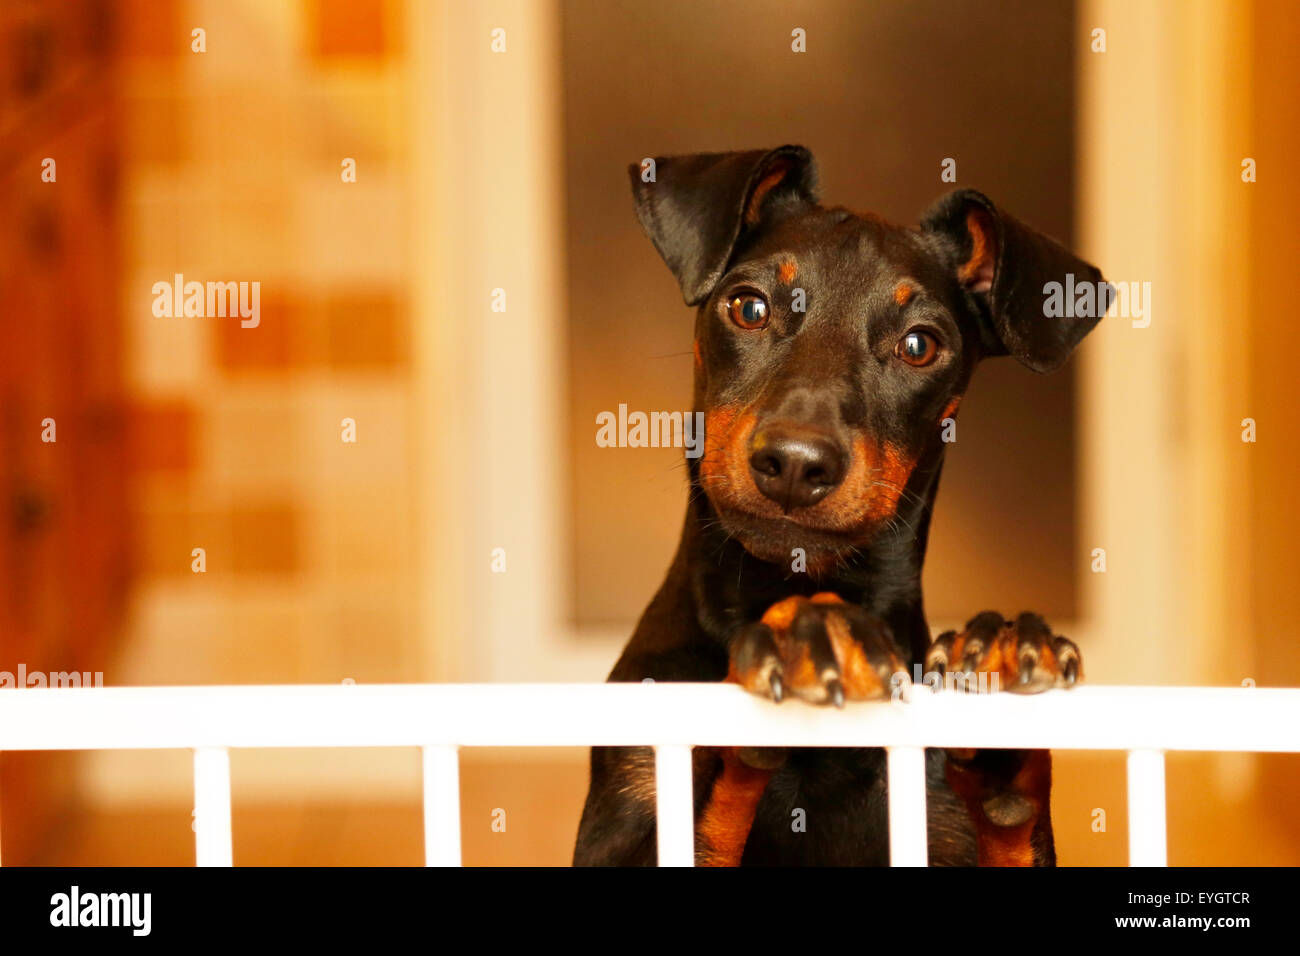 Une alerte, chauds à chien, un terrier de Manchester, avec sa tête d'un côté, l'intérieur d'une maison et de peering sur une barrière Banque D'Images